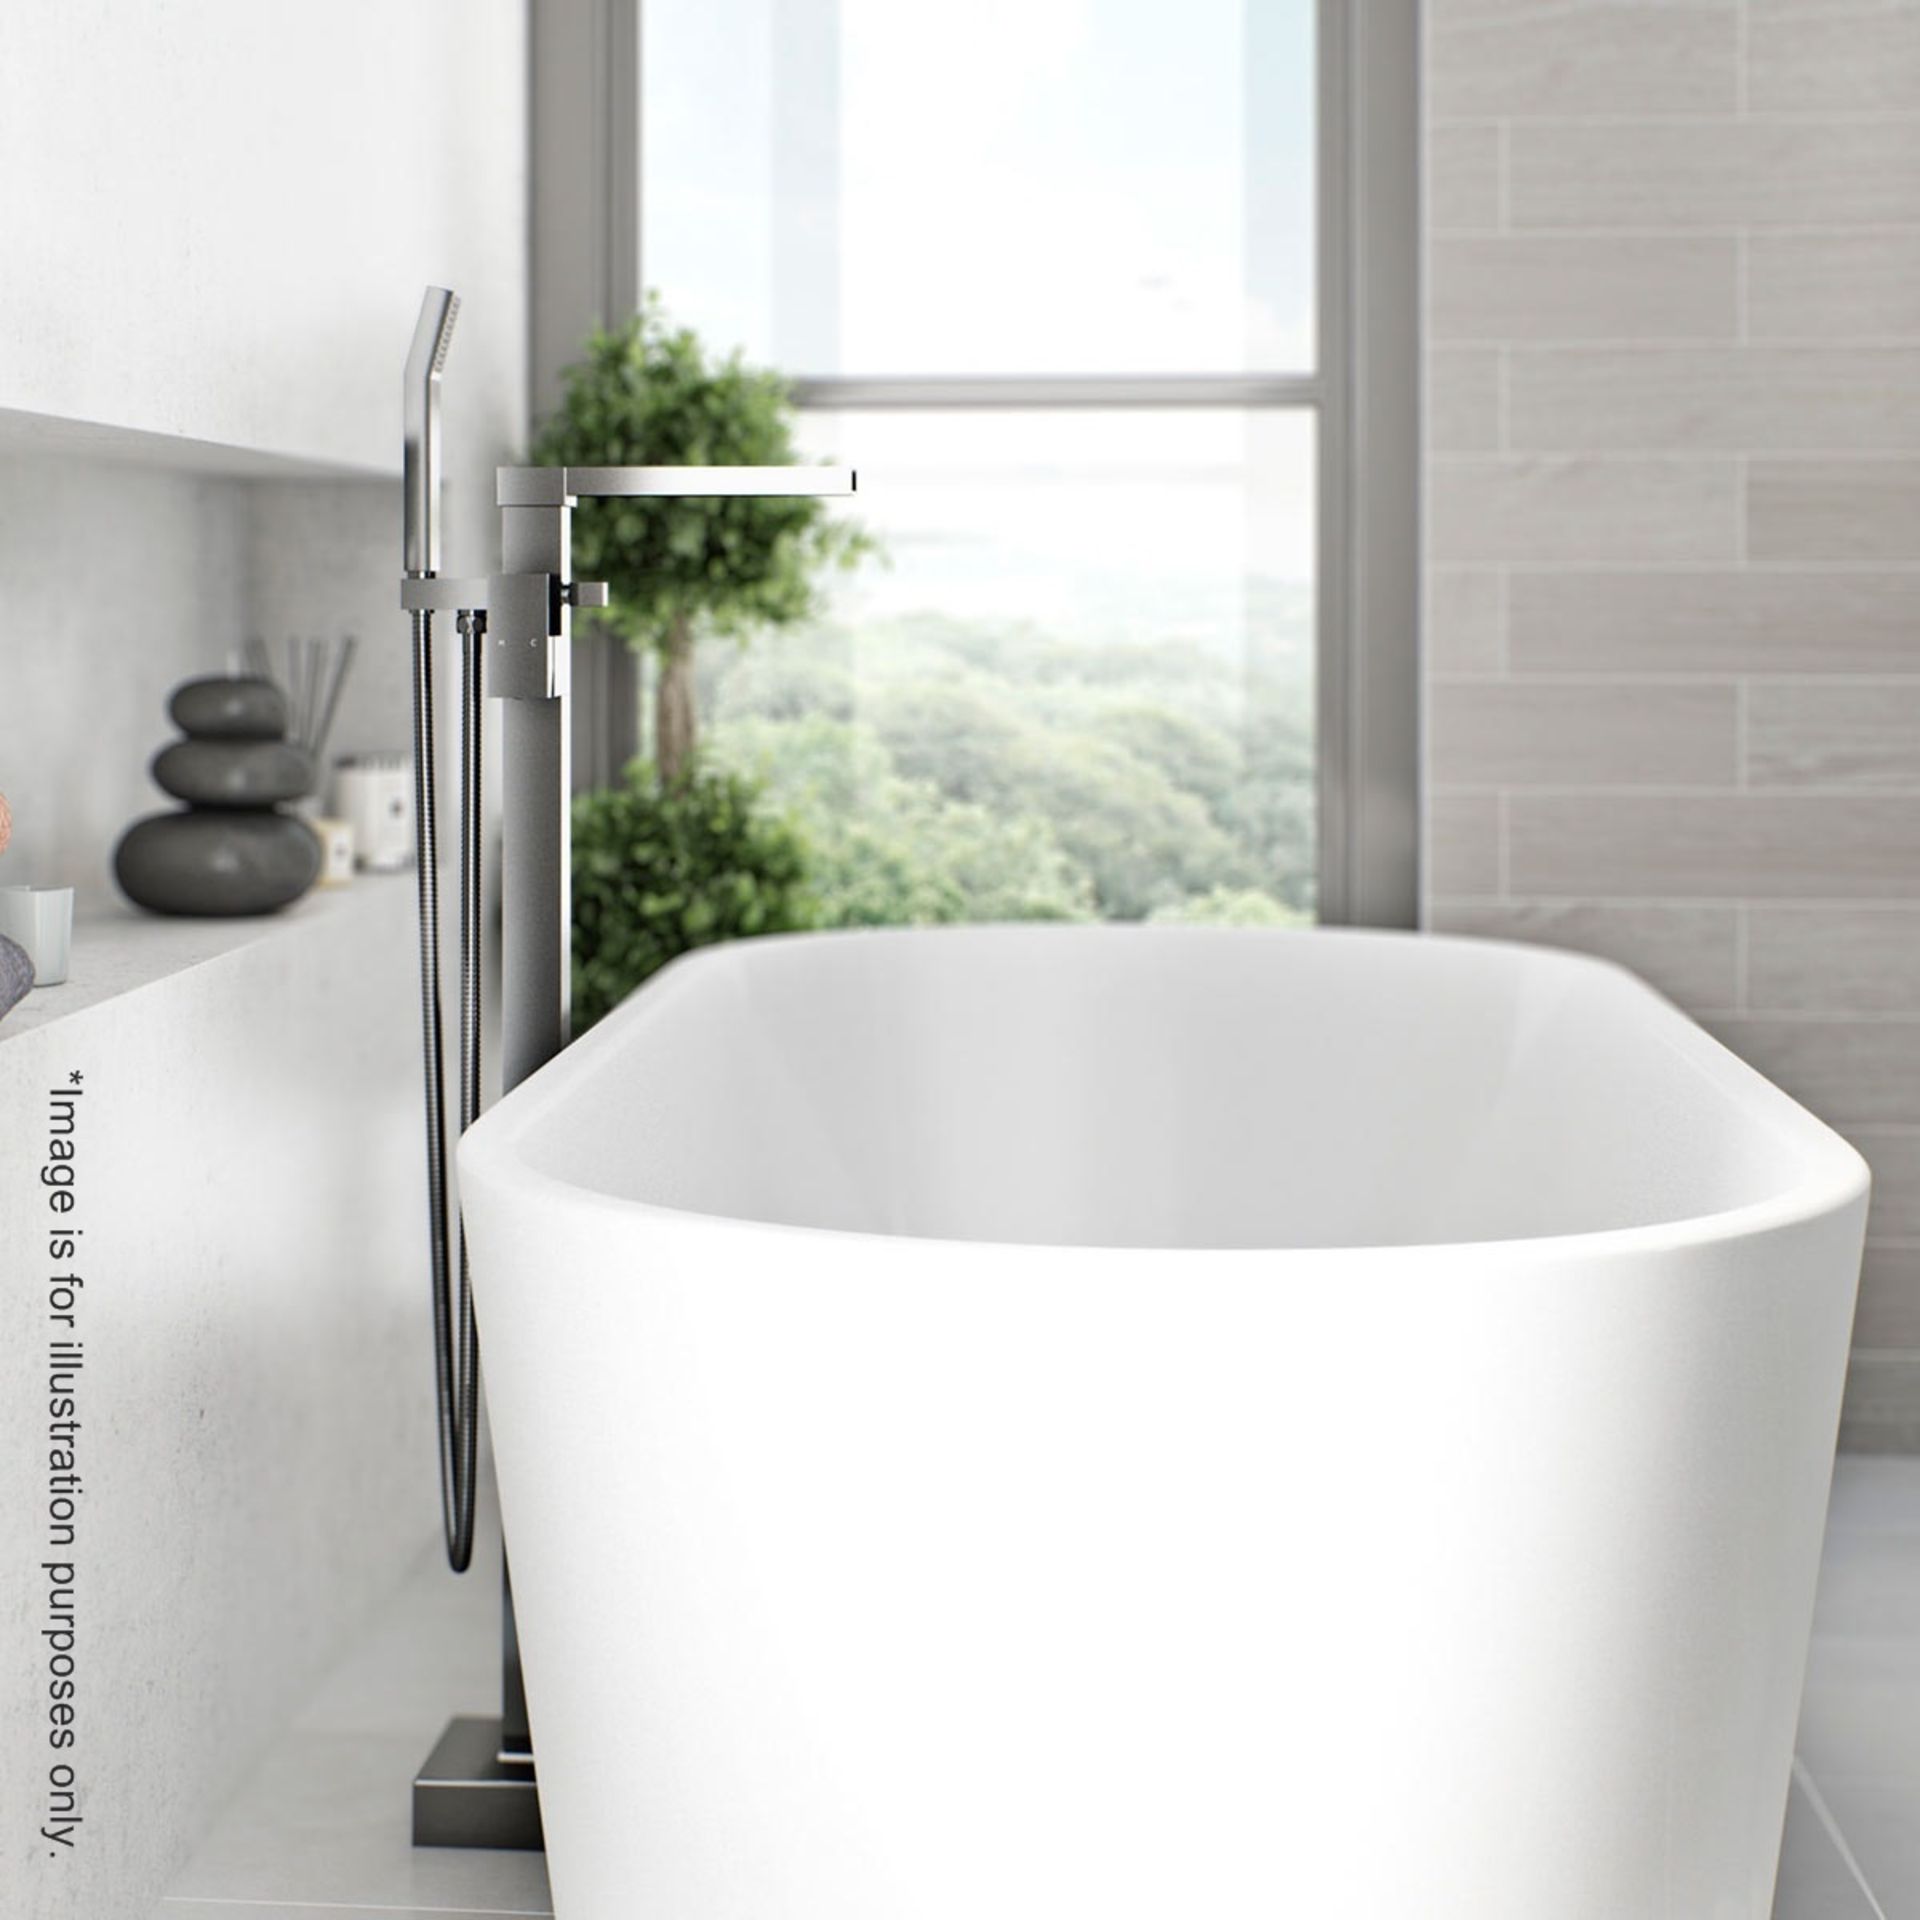 1 x Freestanding Bath Filler Tap - Brass Freestanding Bath Filler - Contemporary Design With